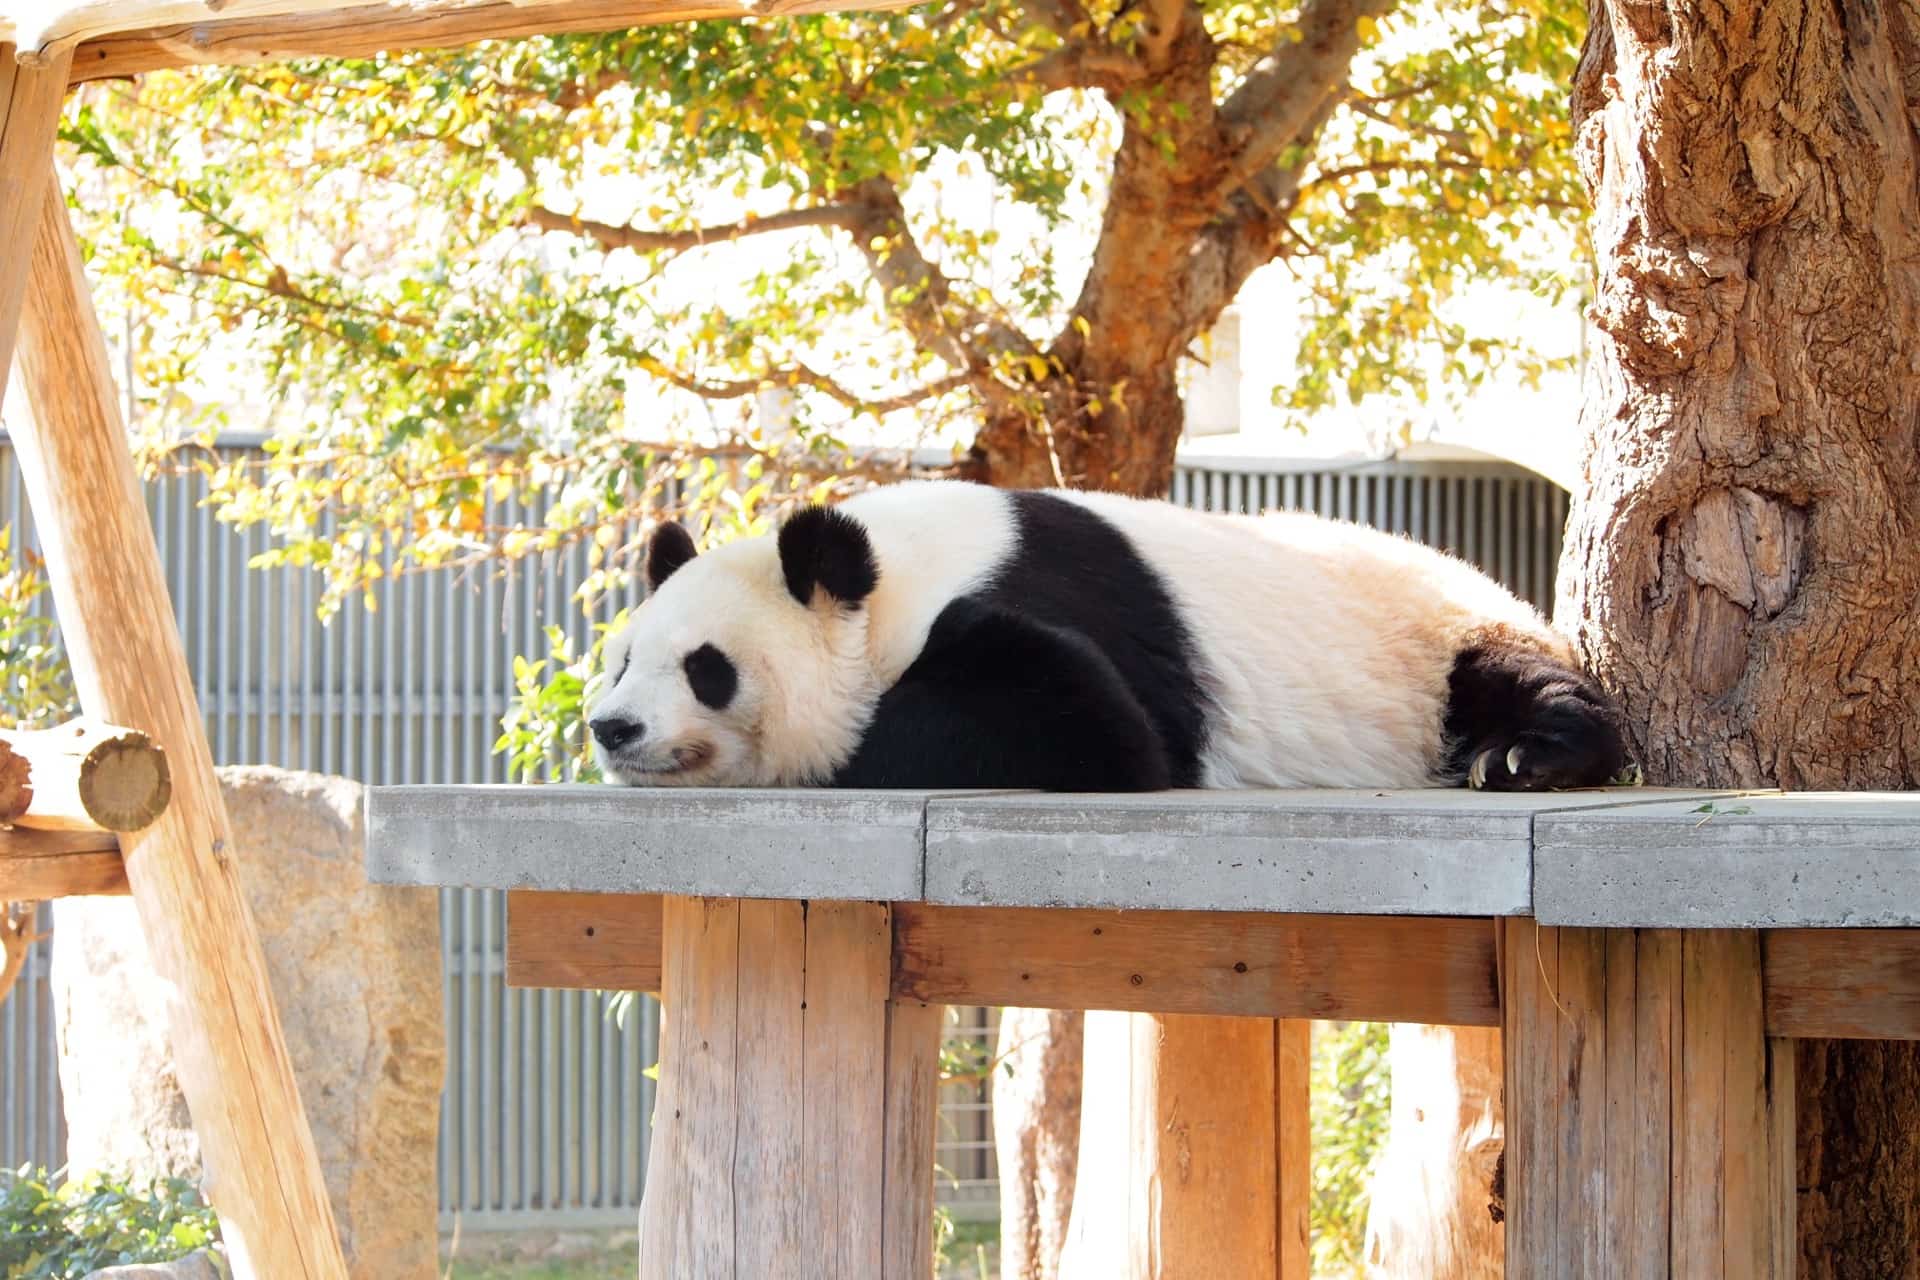 神戸市立王子動物園のパンダ タンタン に会いに行こう かわいい姿が身近で見れるよ